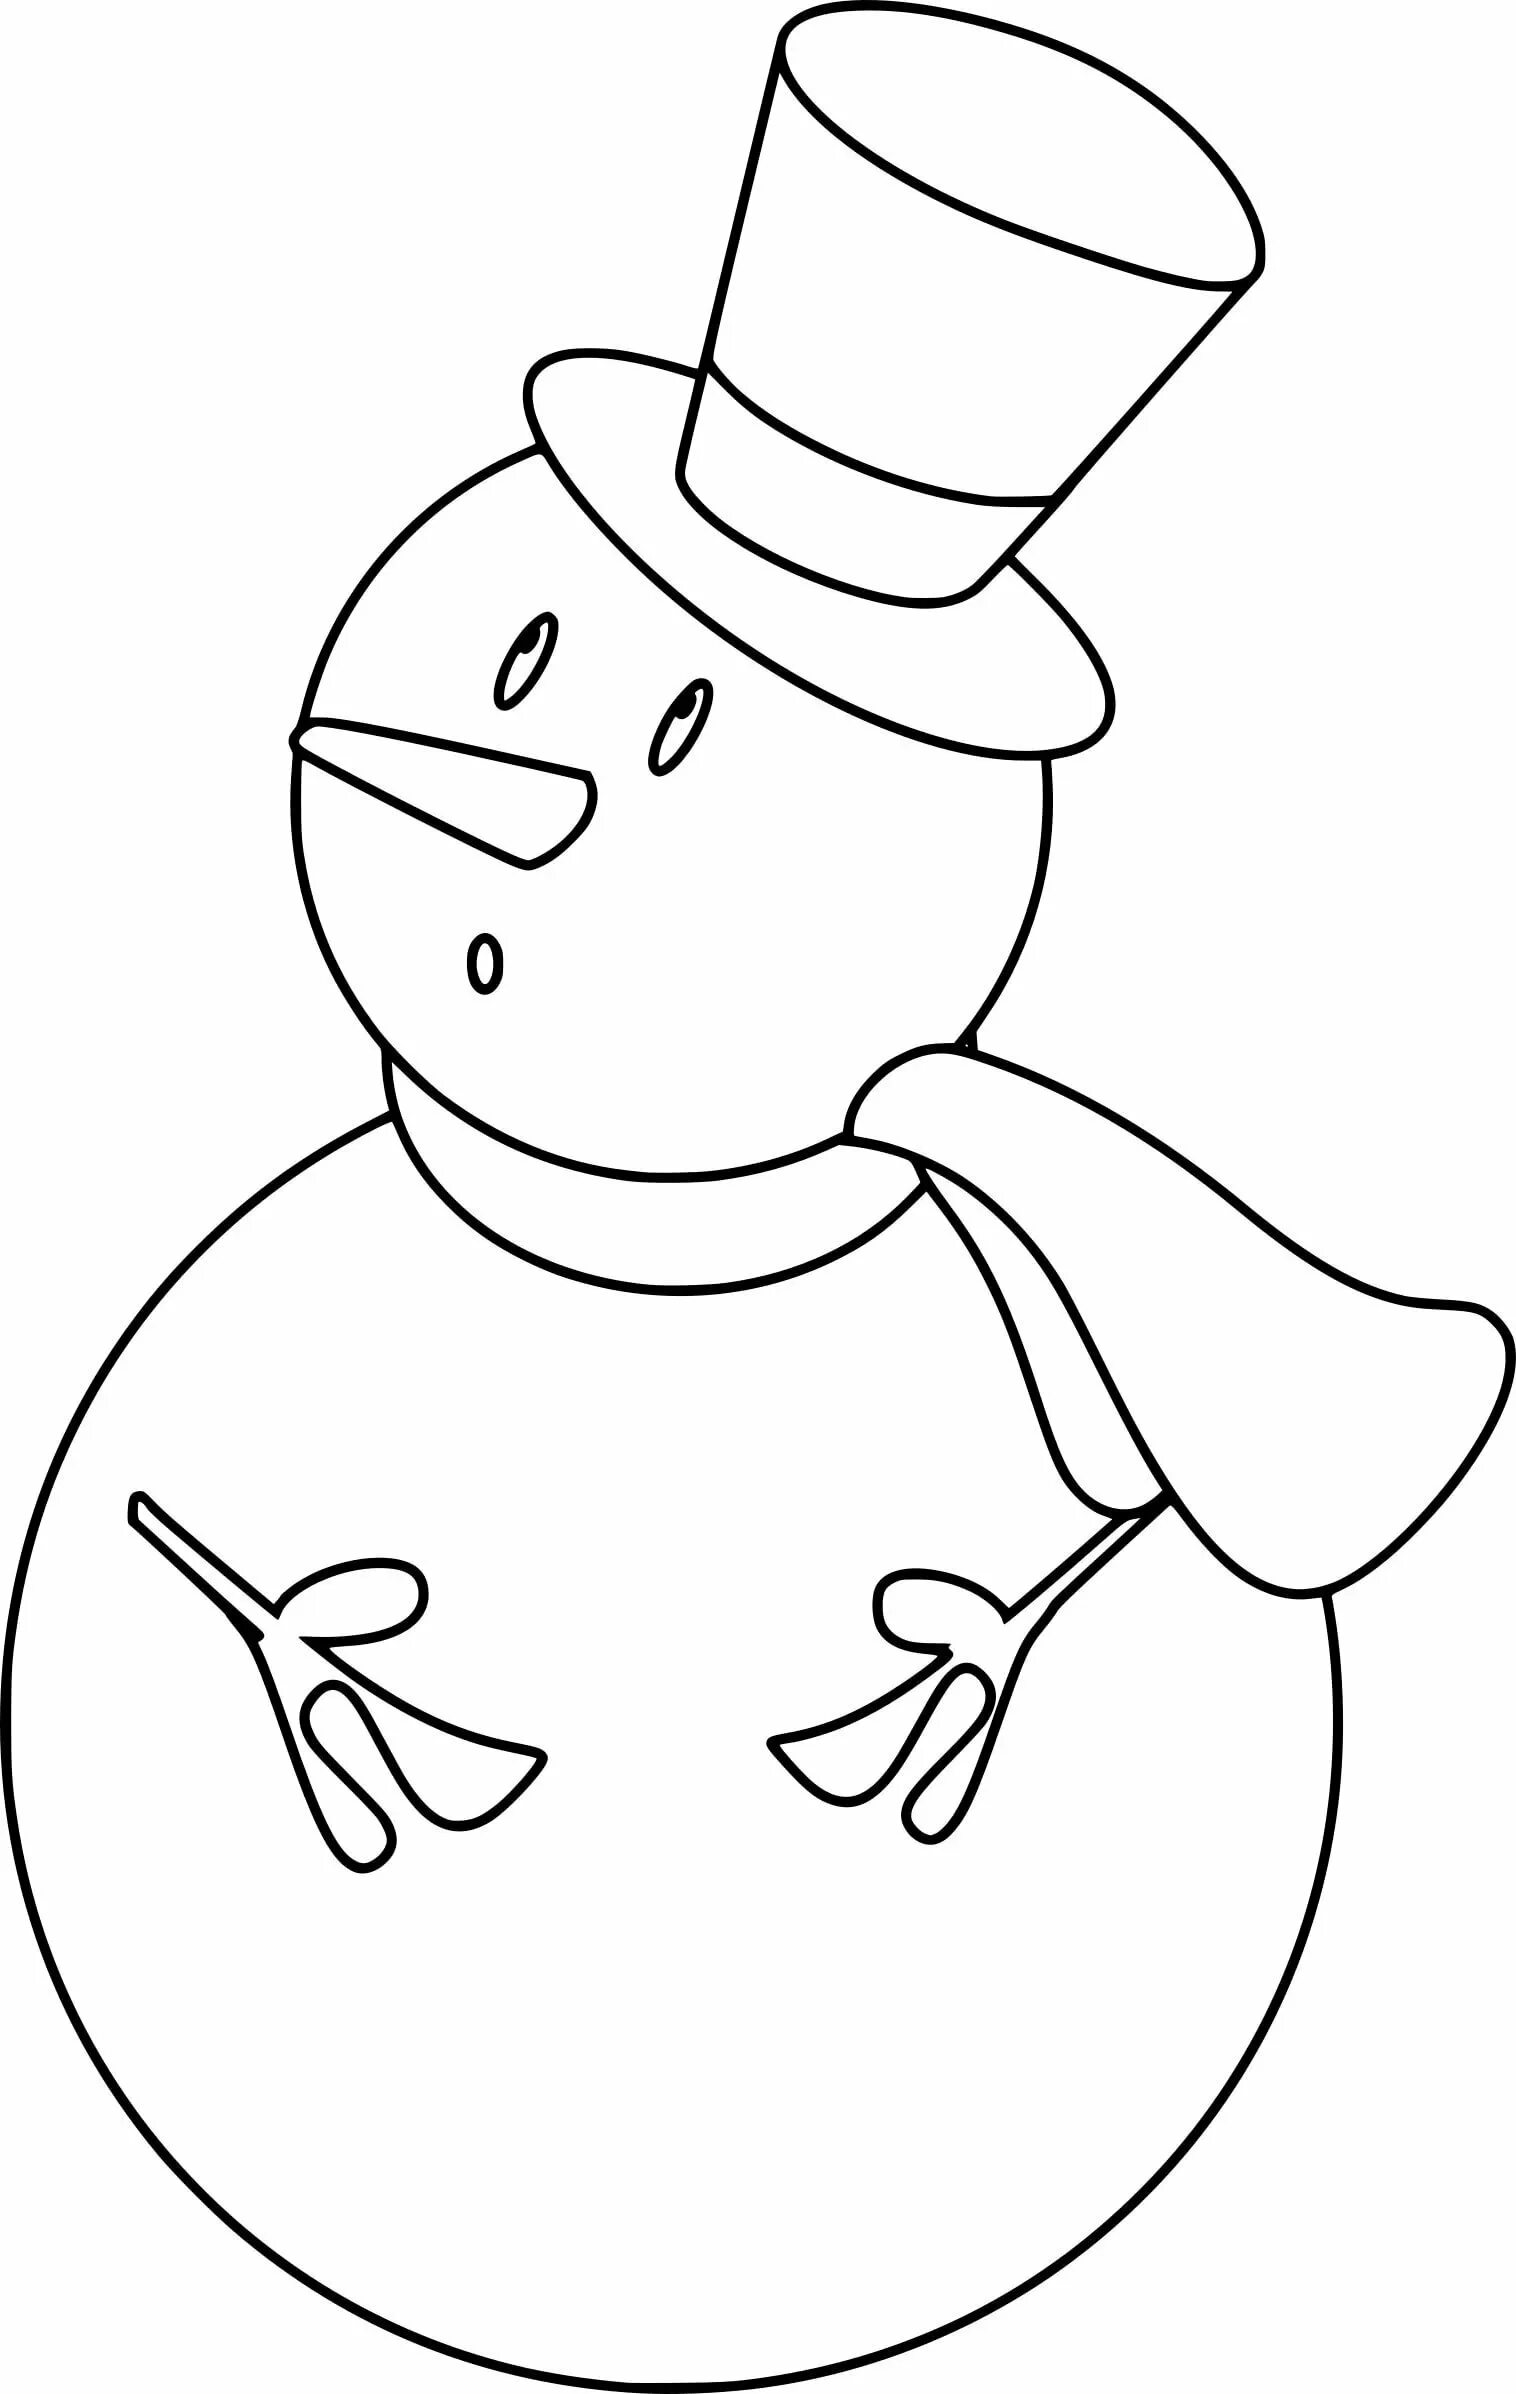 Снеговик для вырезания из бумаги распечатать. Снеговик трафарет. Снеговик трафарет для вырезания. Снеговики для раскрашивания красками. Снеговик картинка для детей.